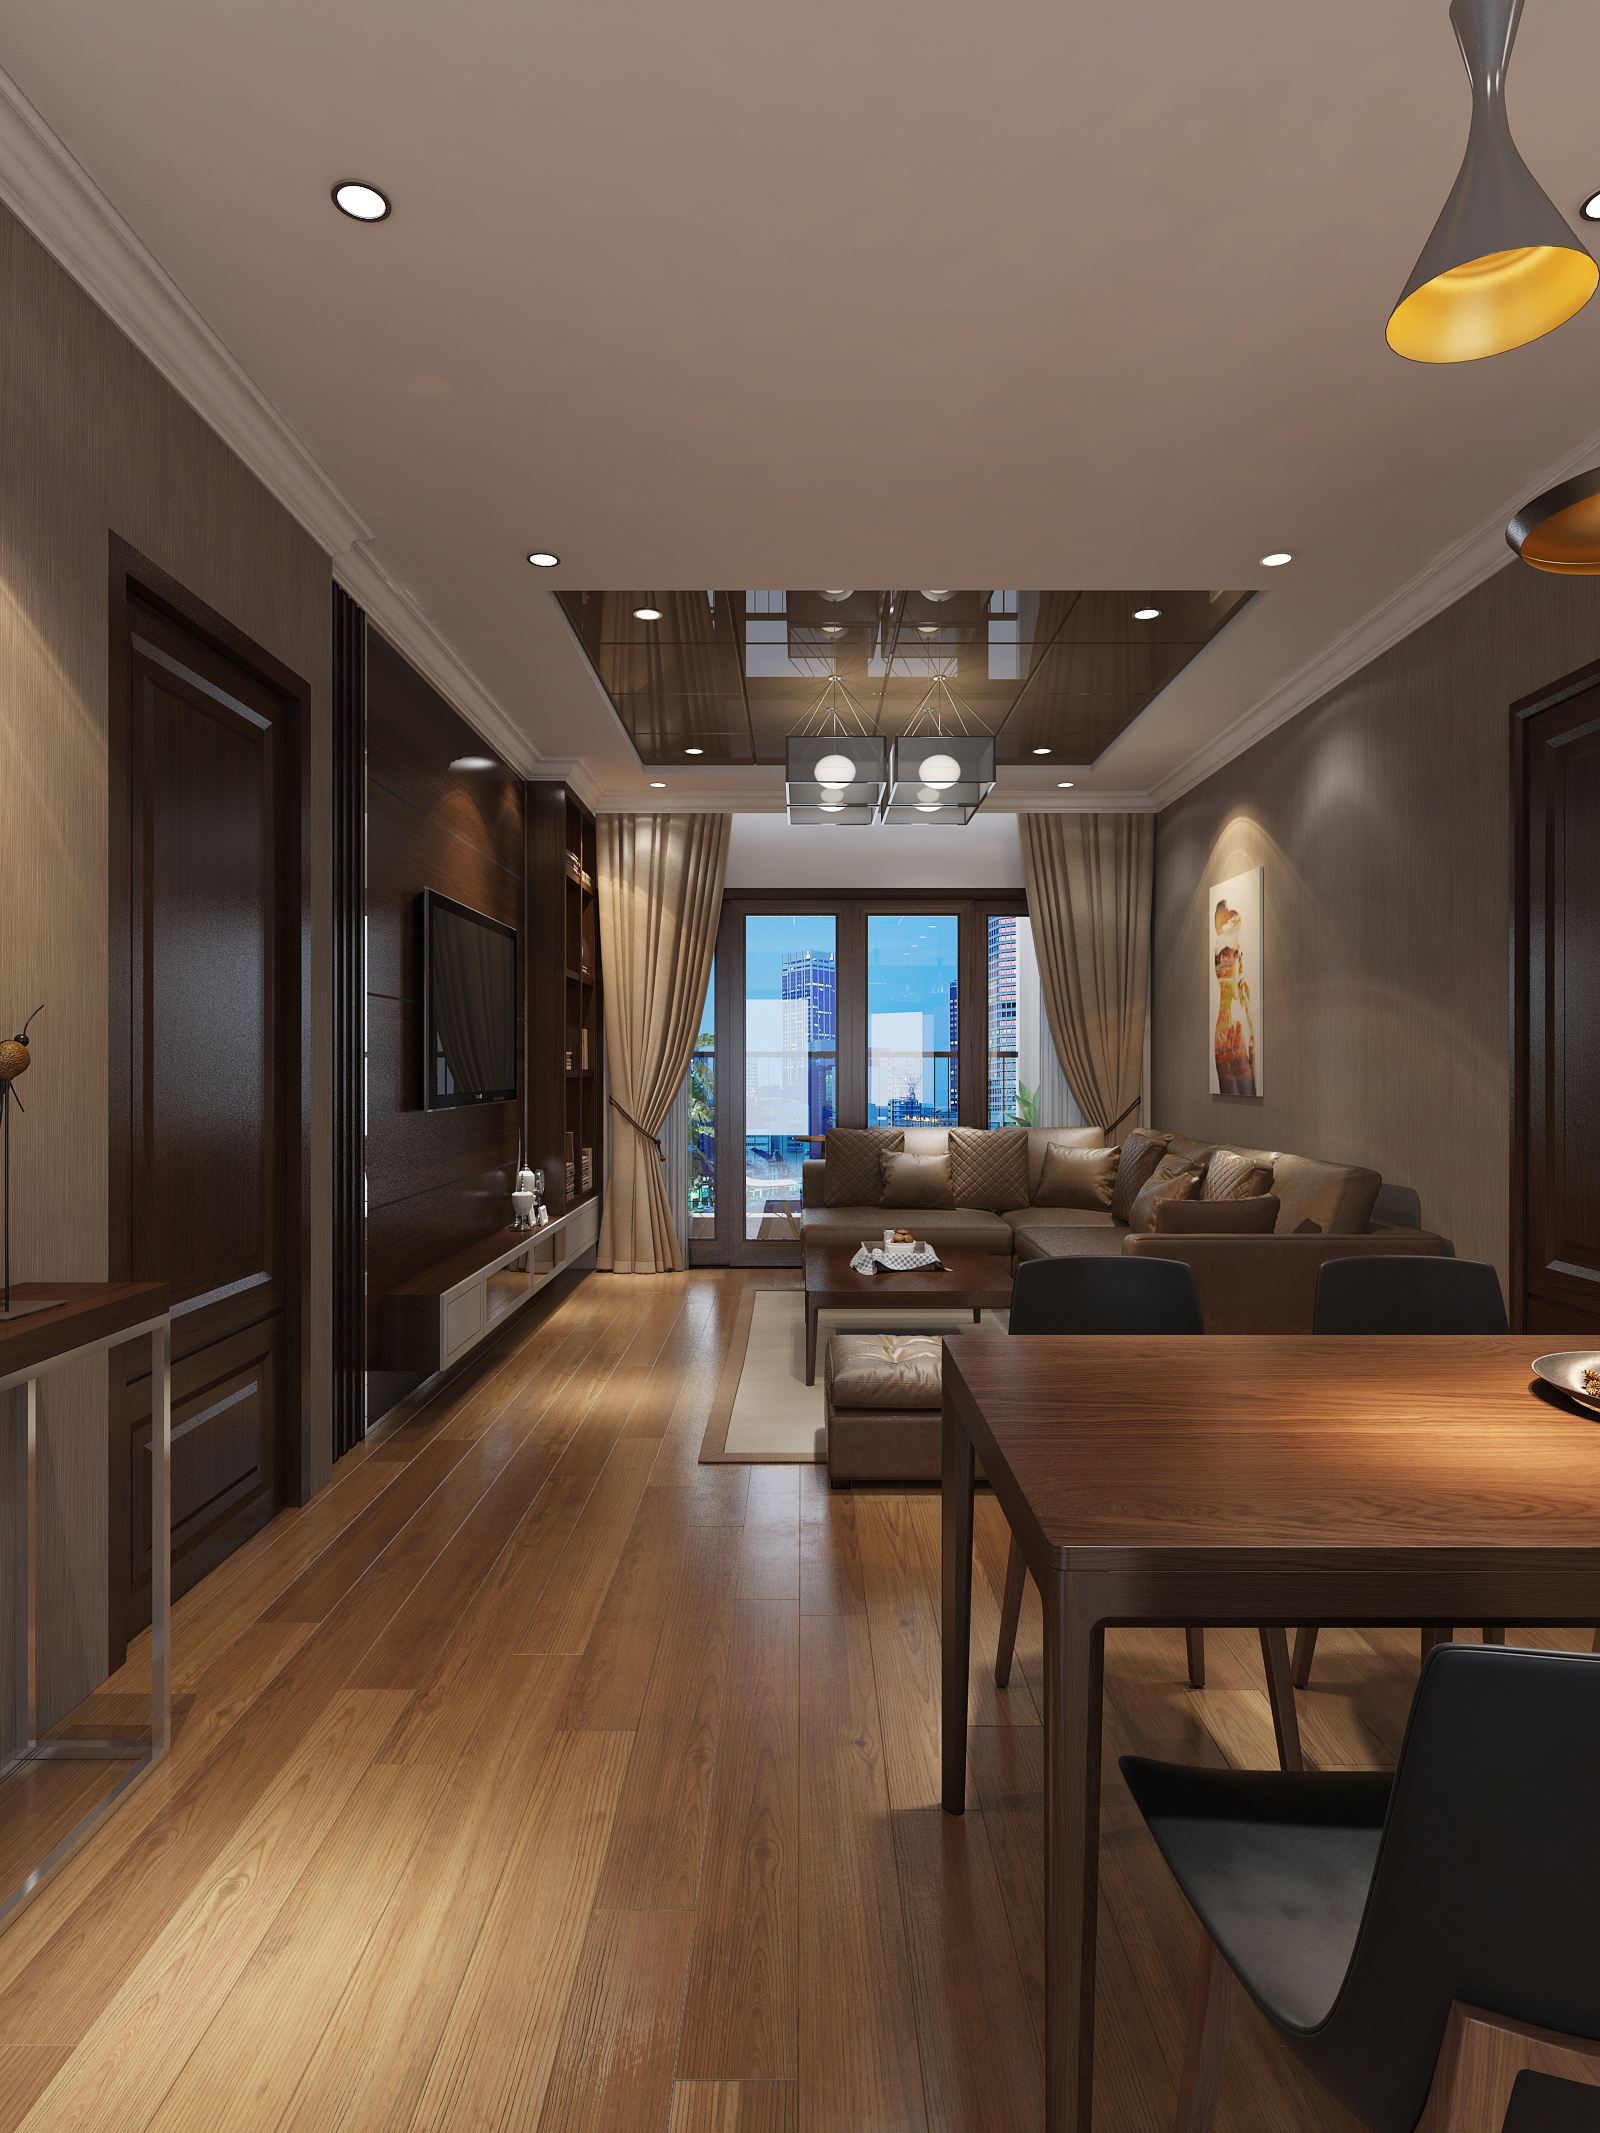 Thiết kế nội thất Chung Cư tại Hà Nội Thiết kế nội thất căn hộ chung cư Royal City - R108 1614415040 6